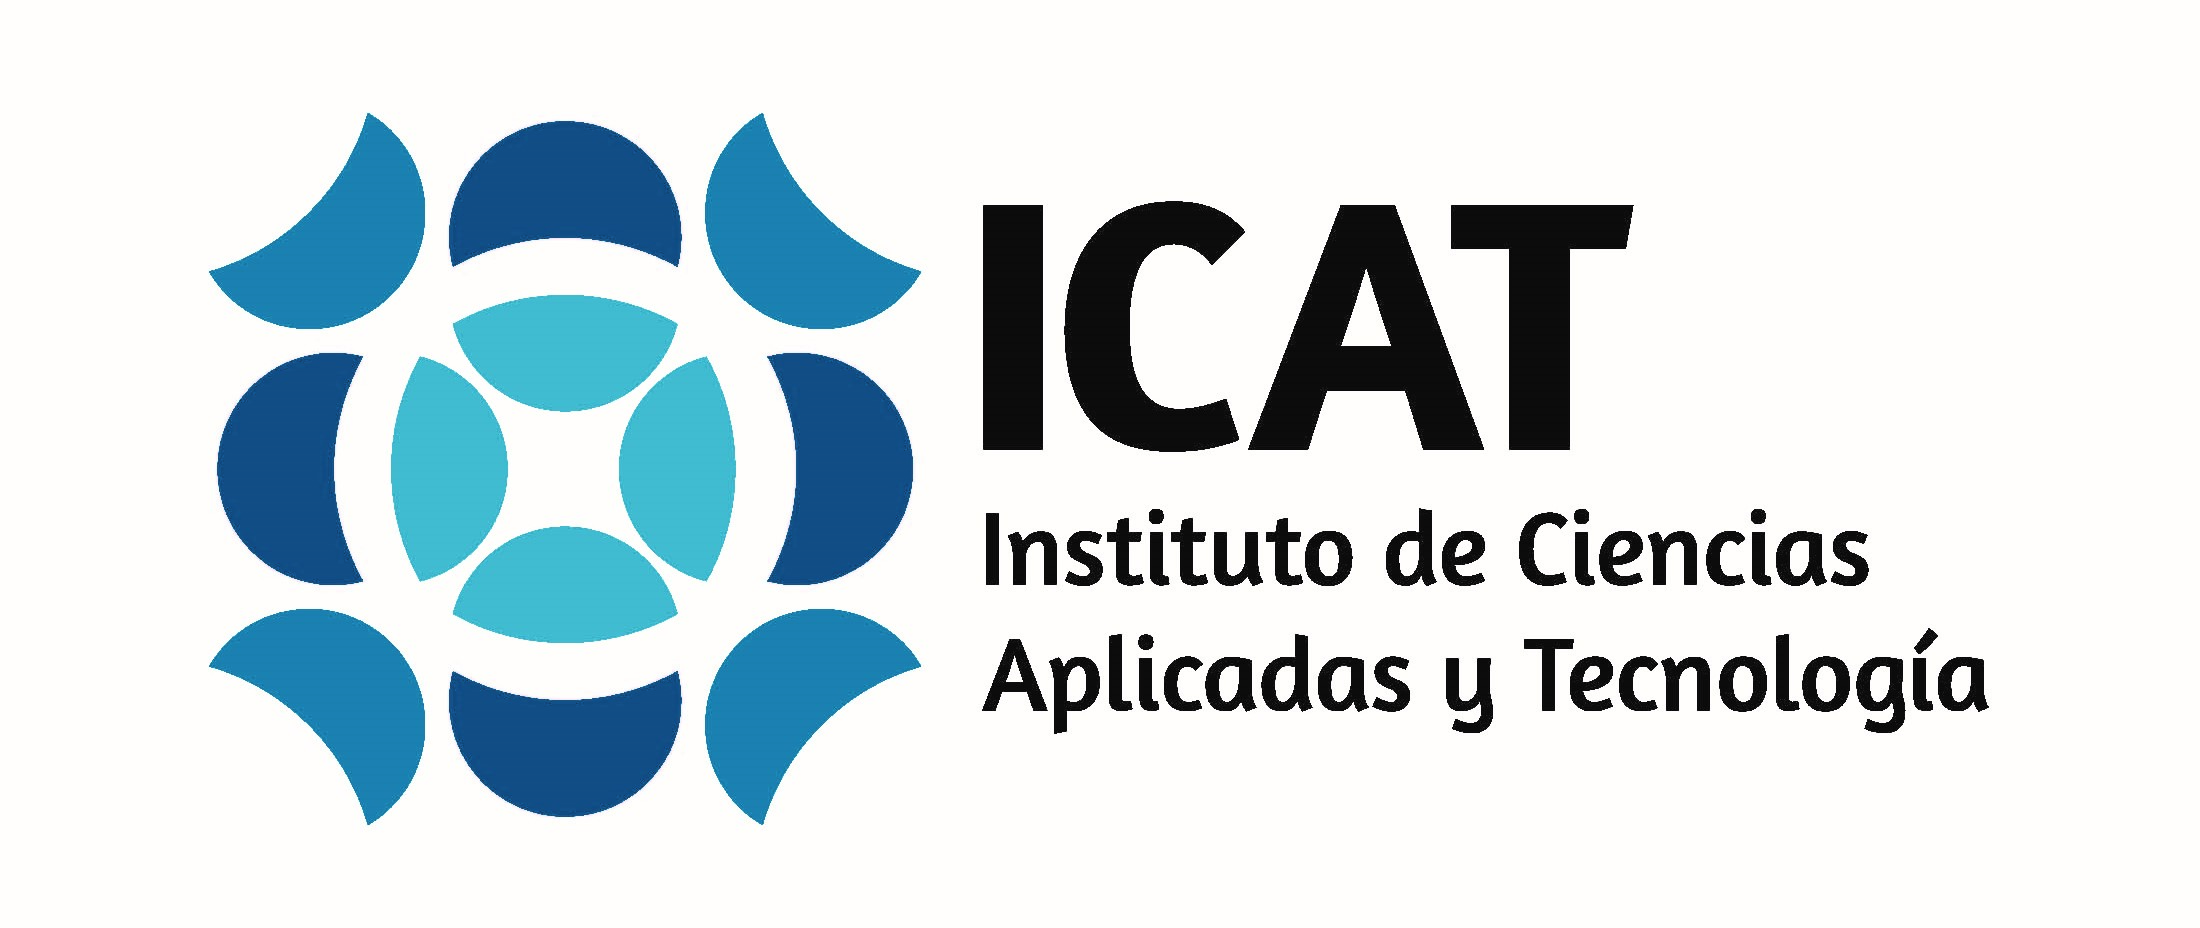 Logotipo ICAT